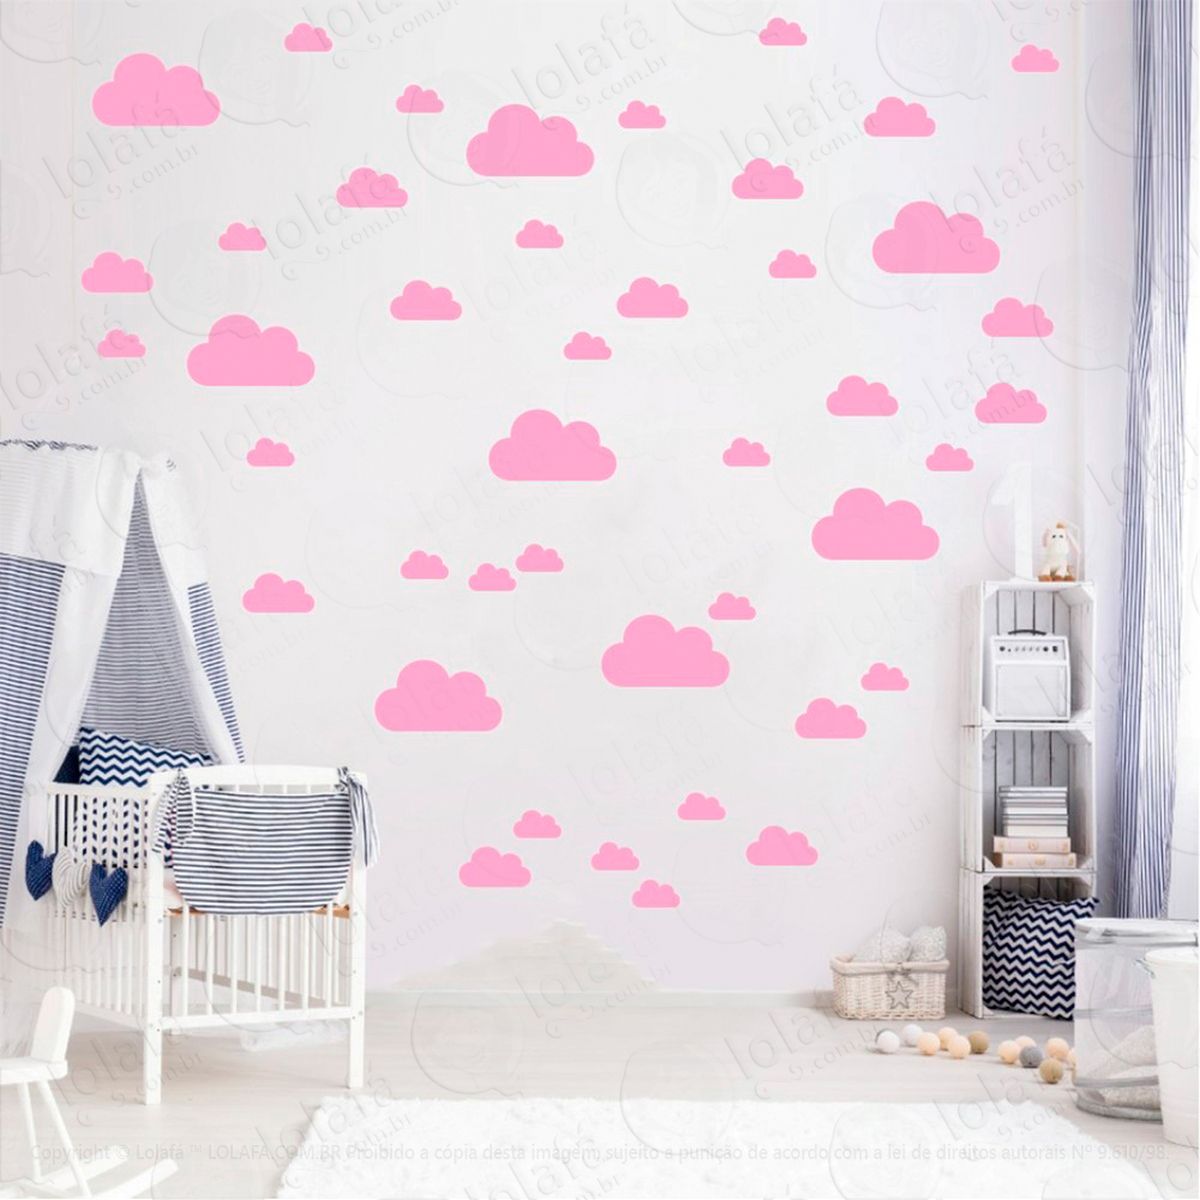 adesivos nuvens 78 peças adesivos para quarto de bebê infantil - mod:770